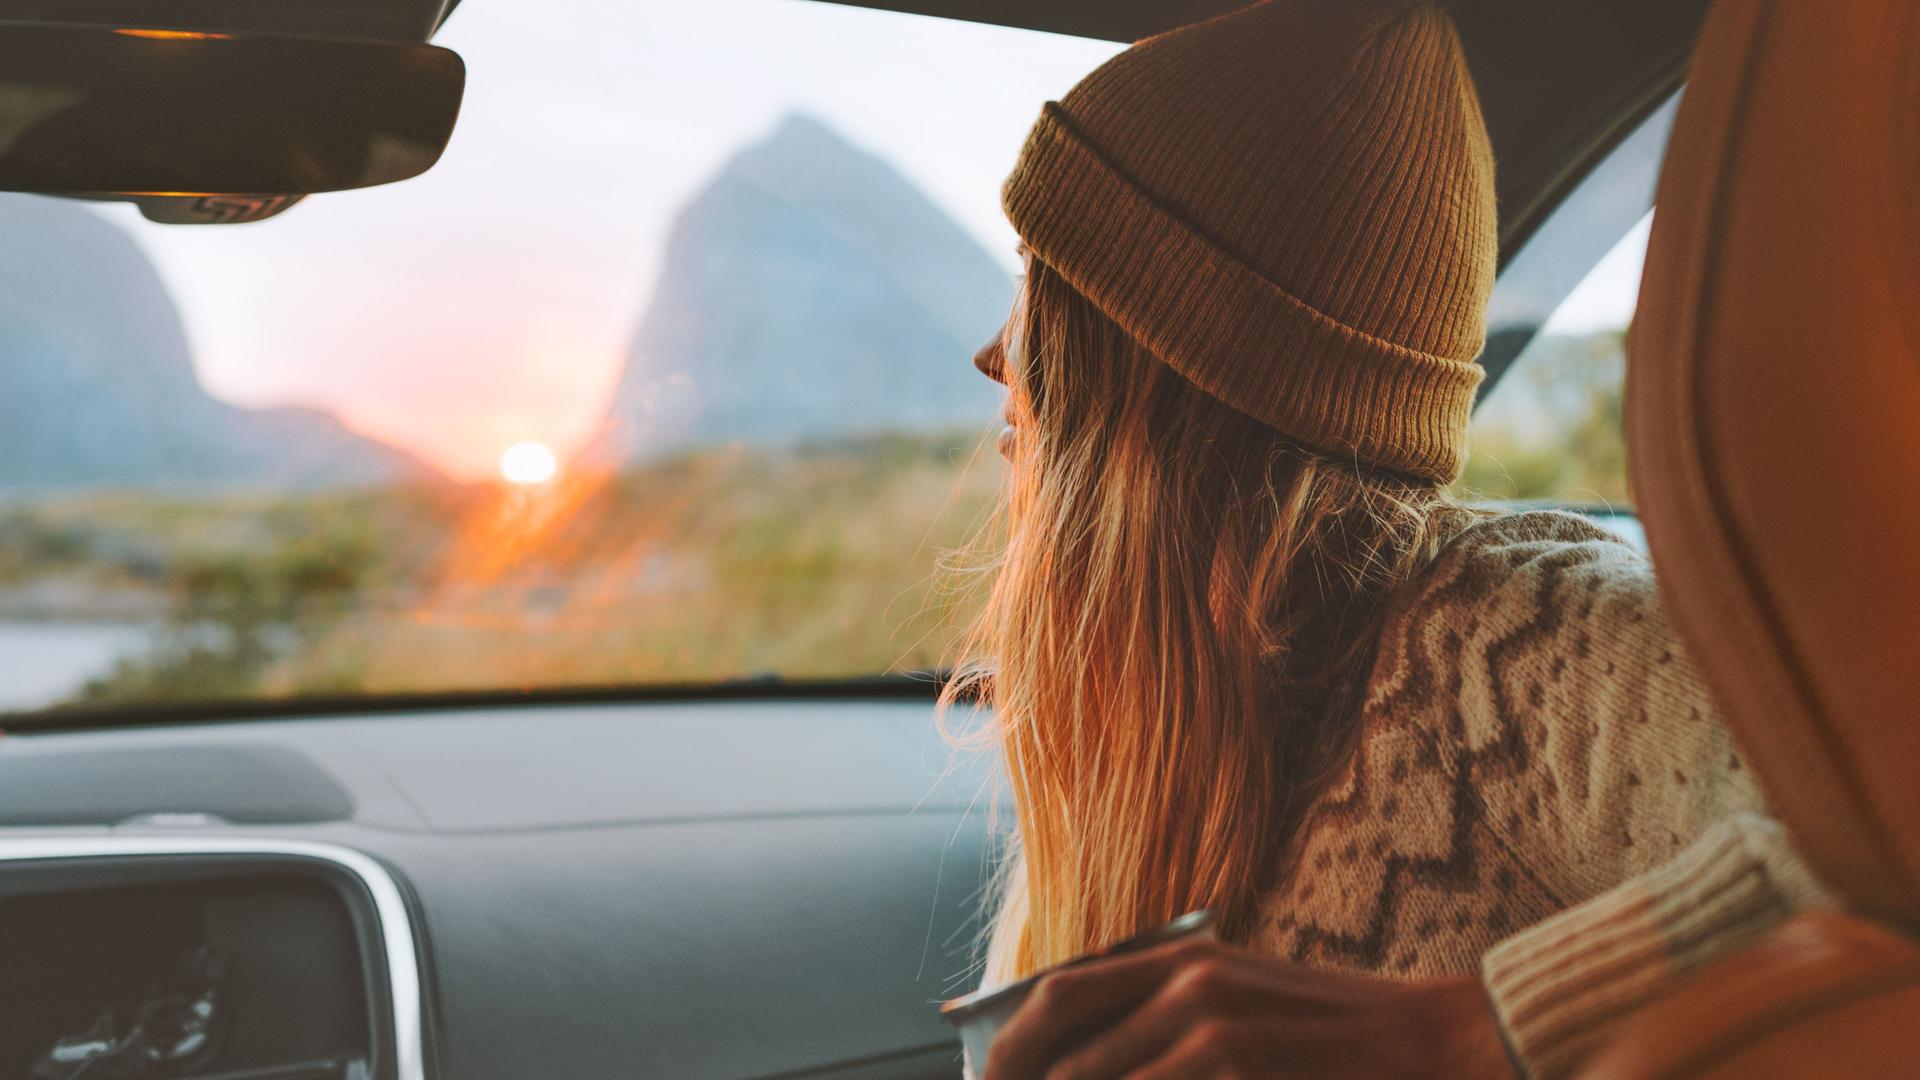 Junge Frau sitzt im Auto und durch die Frontscheibe. Im Hintergrund sind Berge und ein Sonnenuntergang zu sehen.